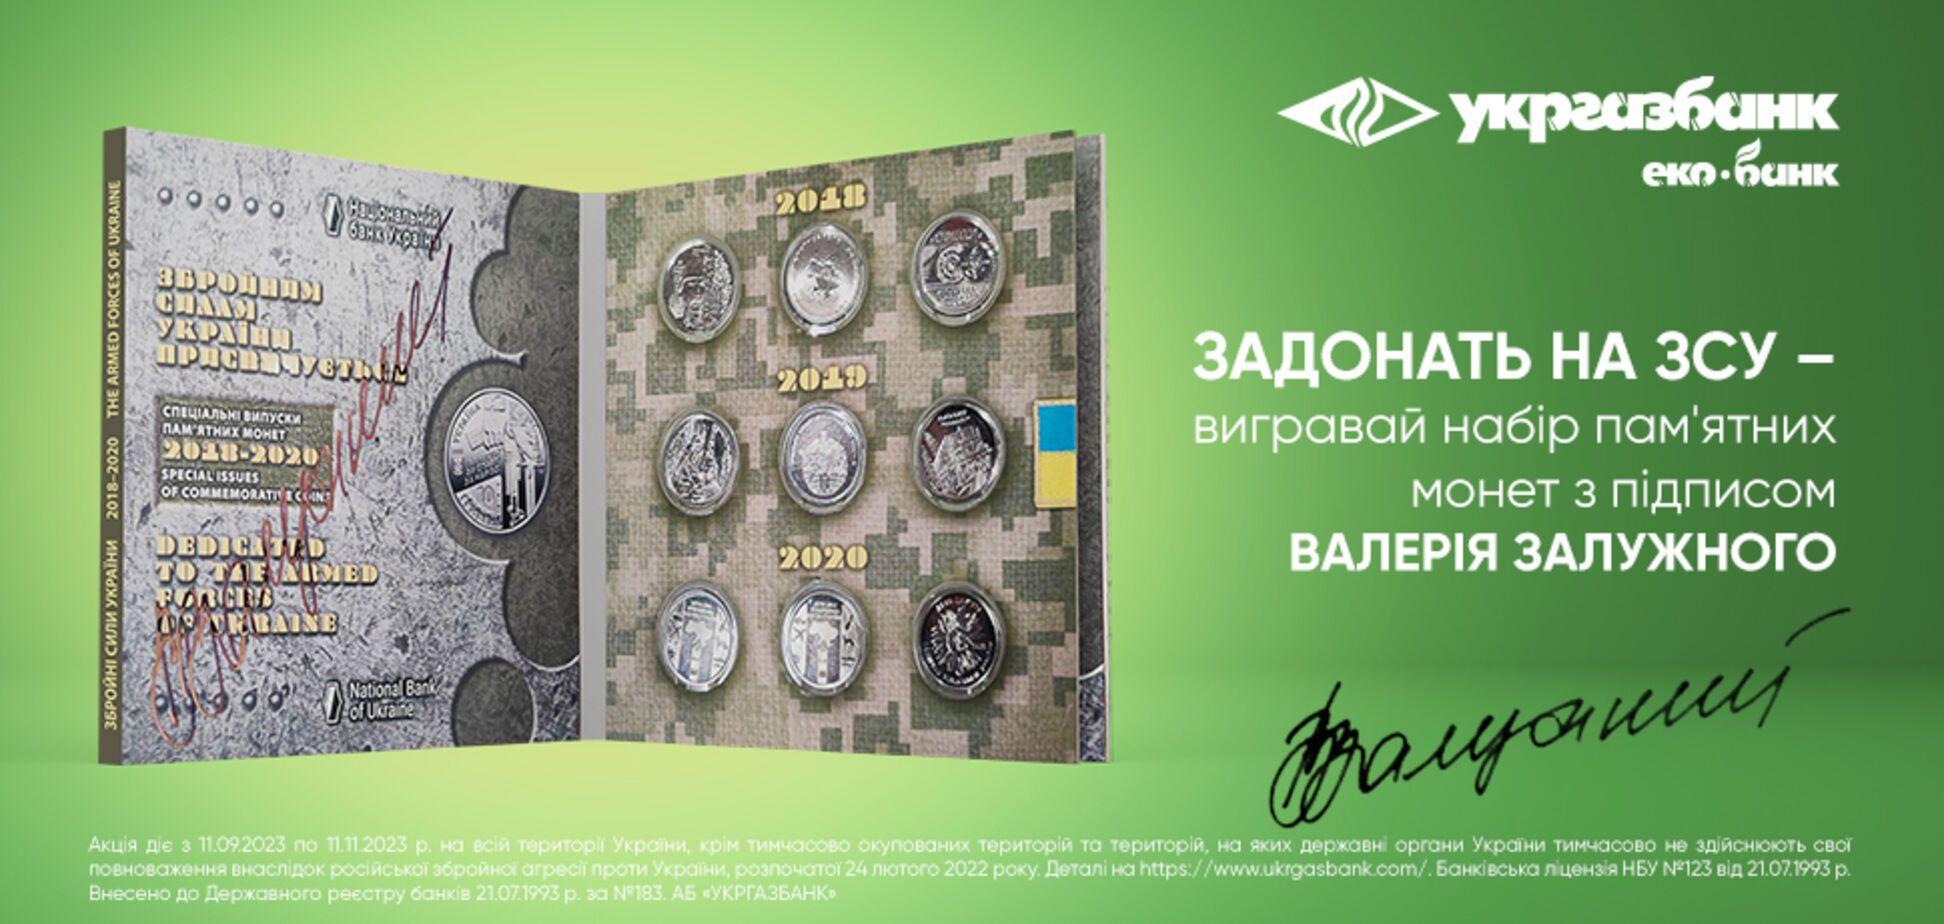 Монети з підписом Залужного за донат на ЗСУ: як взяти участь в акції Укргазбанку